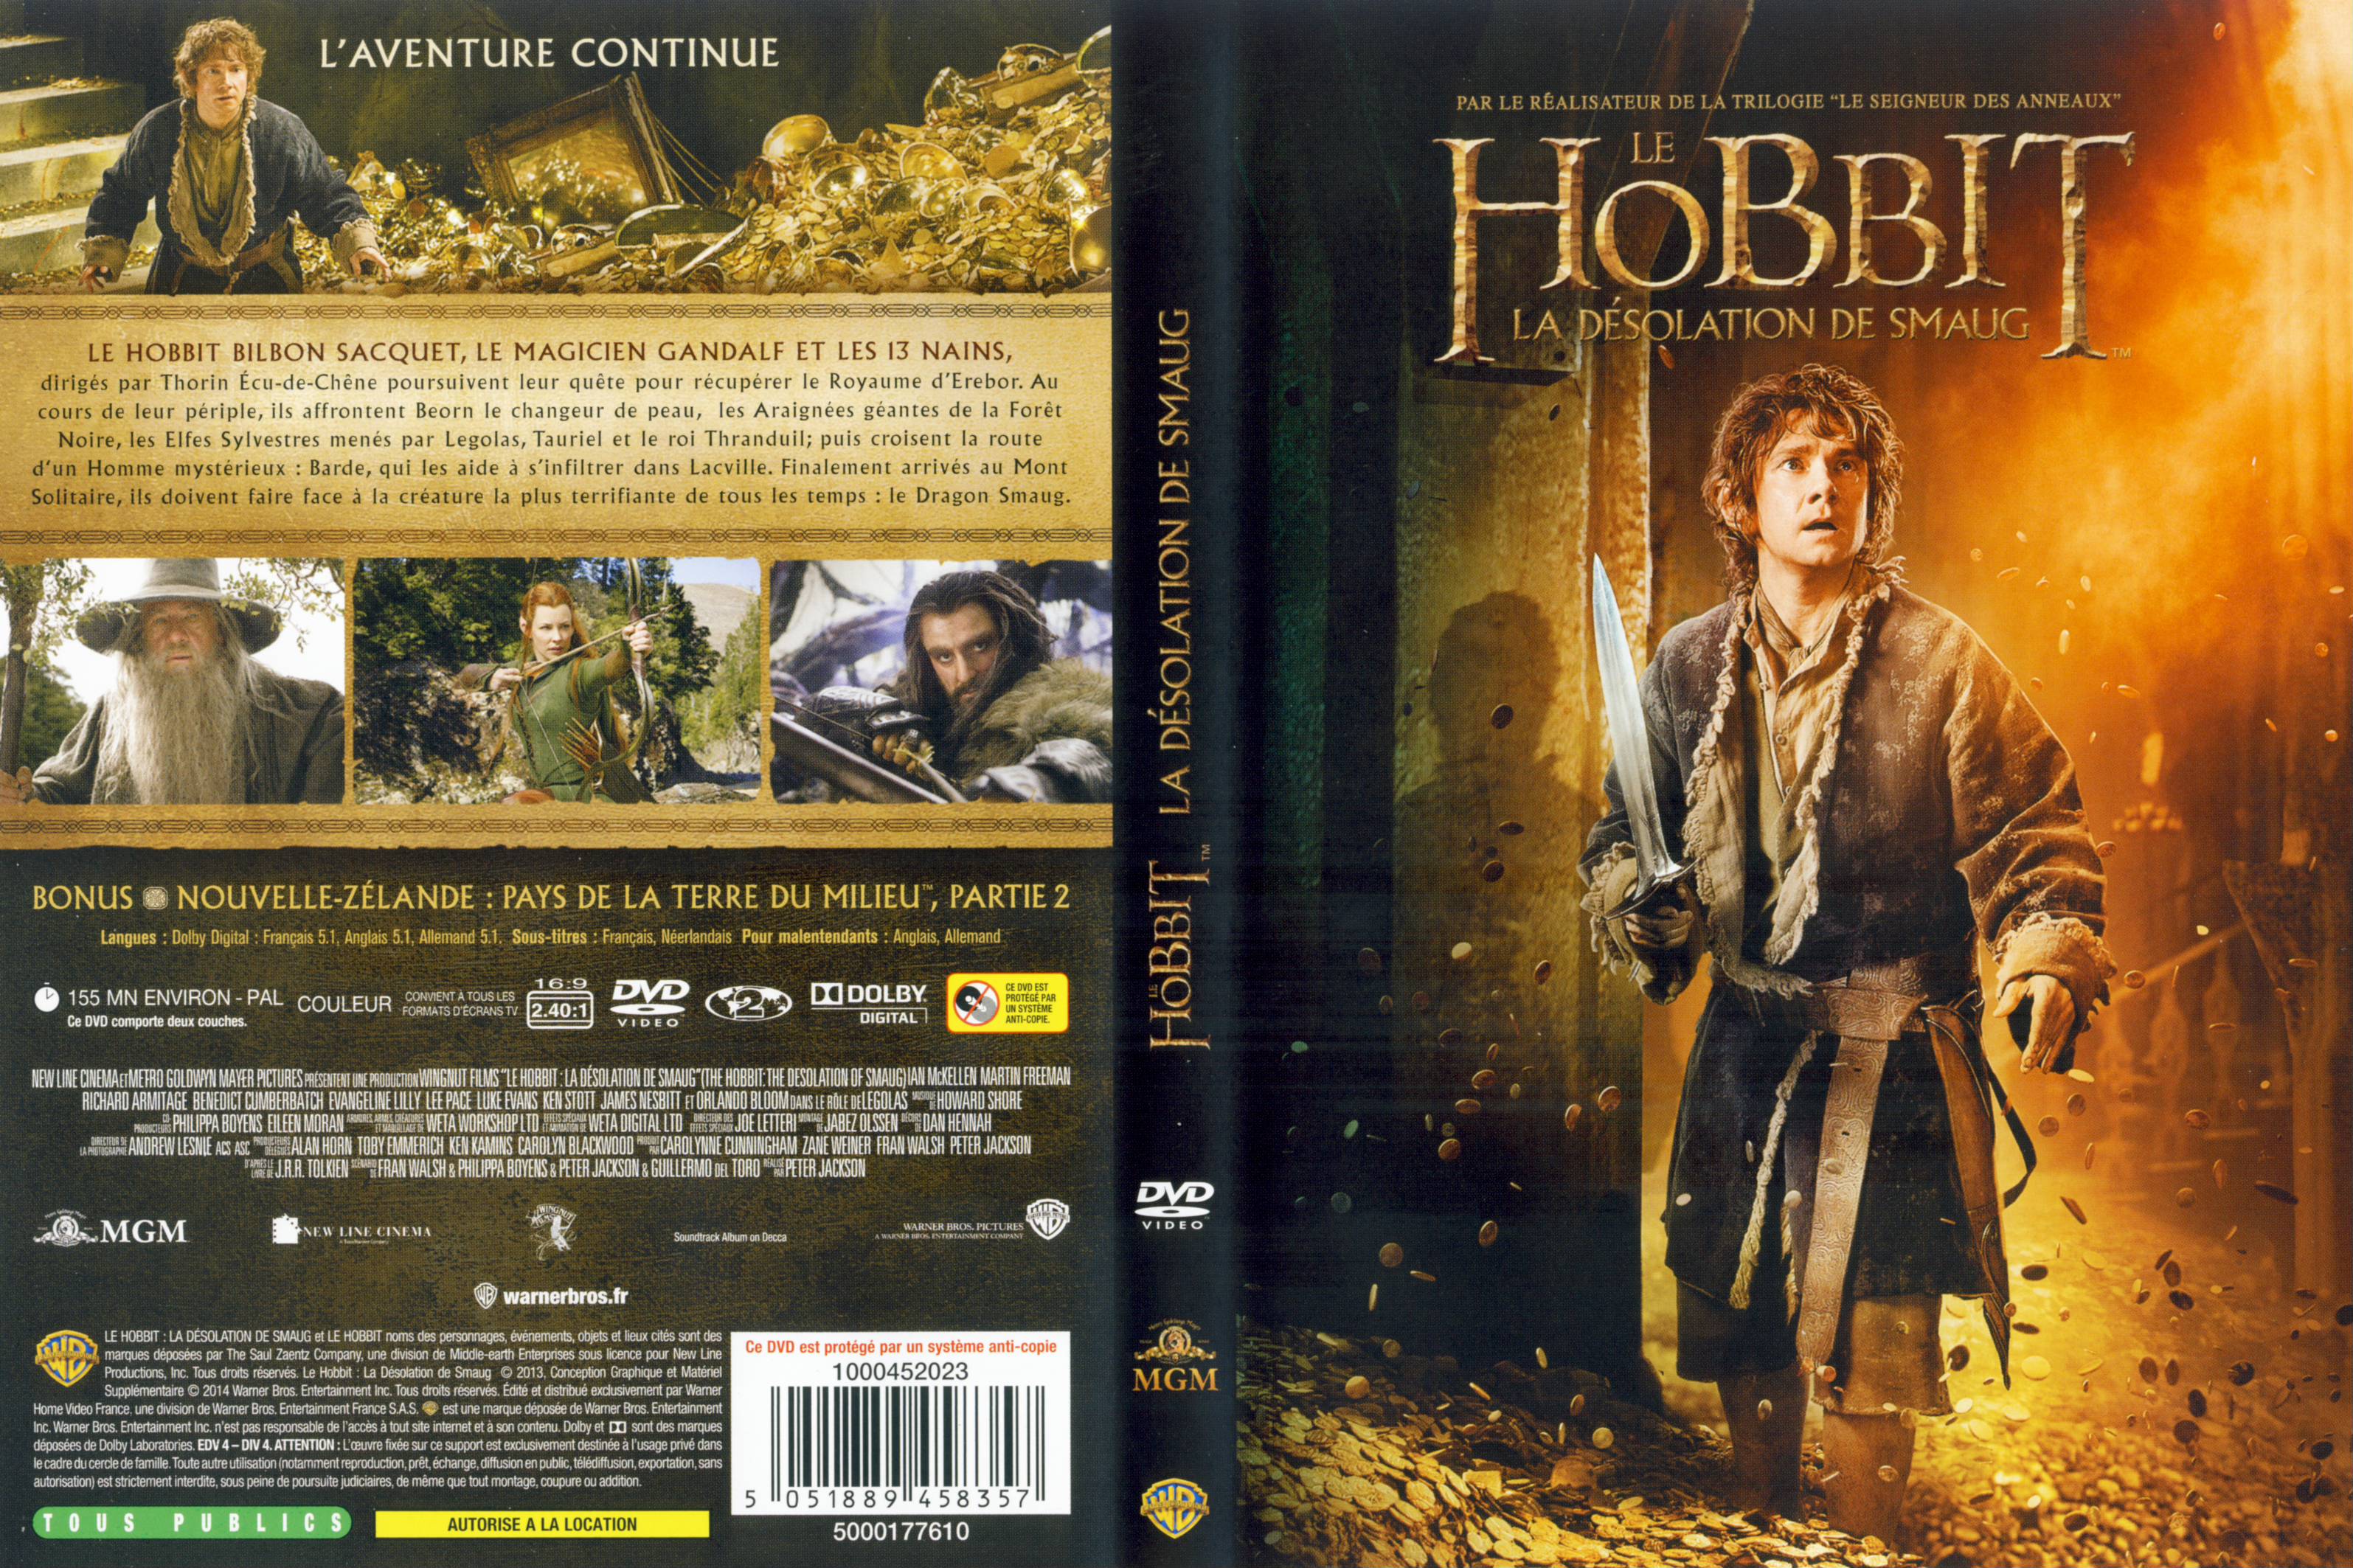 Jaquette DVD Le Hobbit la Dsolation de Smaug